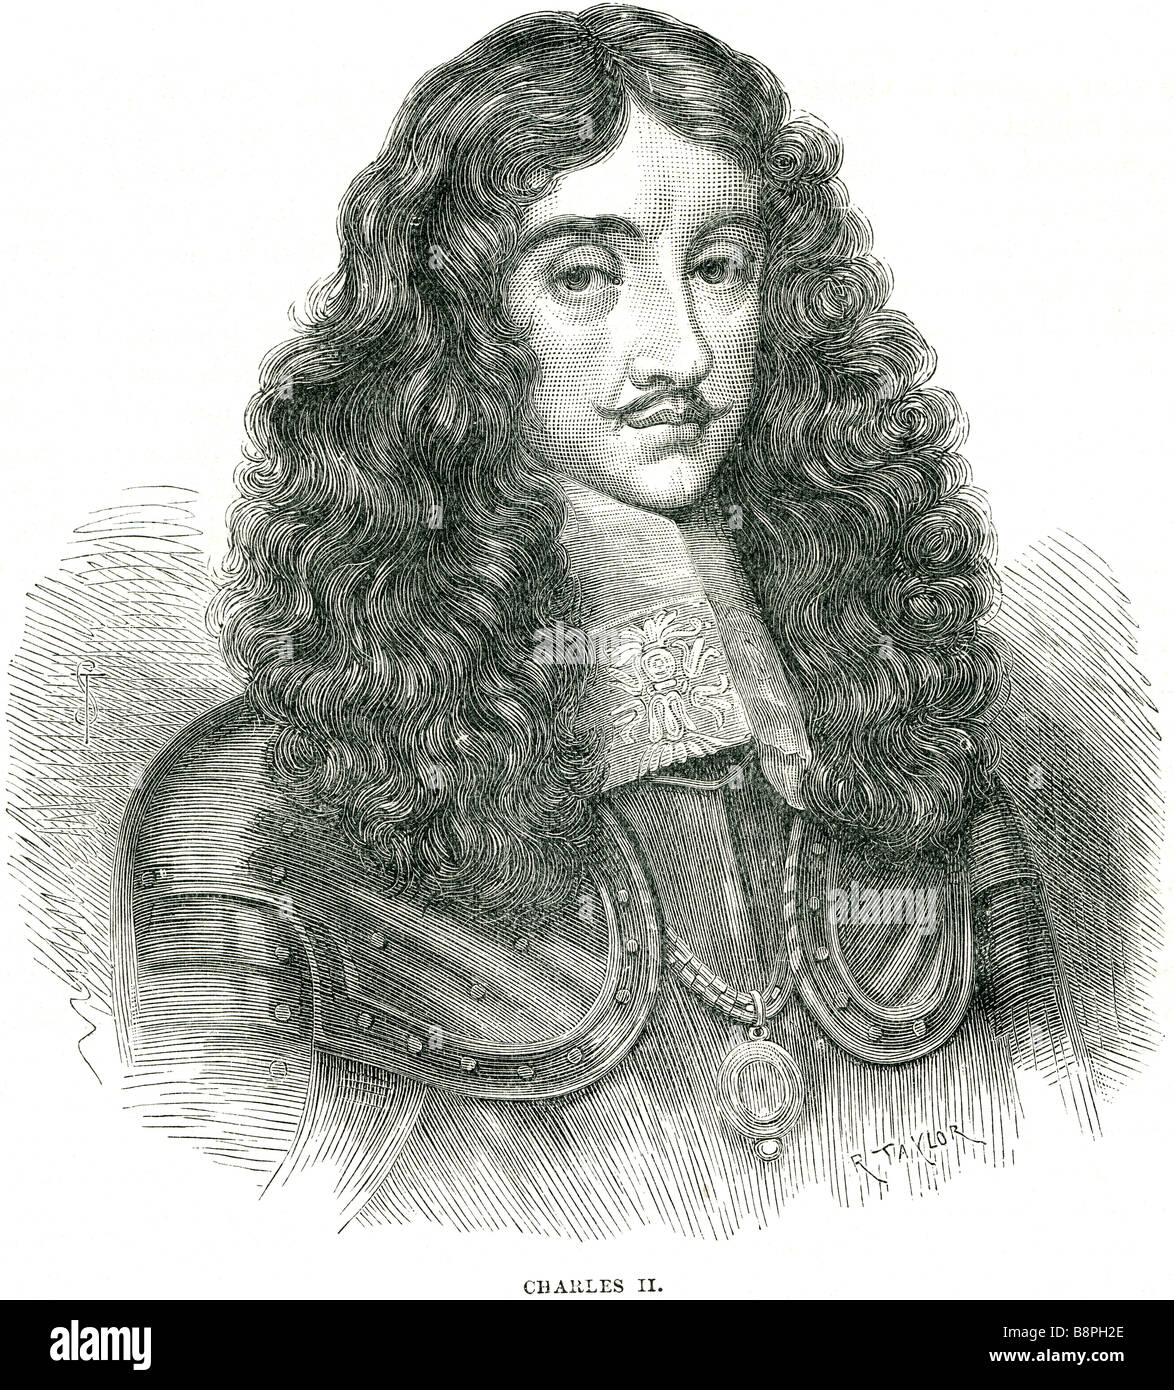 Charles II padre del re Carlo I è stato eseguito a Whitehall il 30 gennaio 1649, al culmine della guerra civile inglese. La Eng Foto Stock